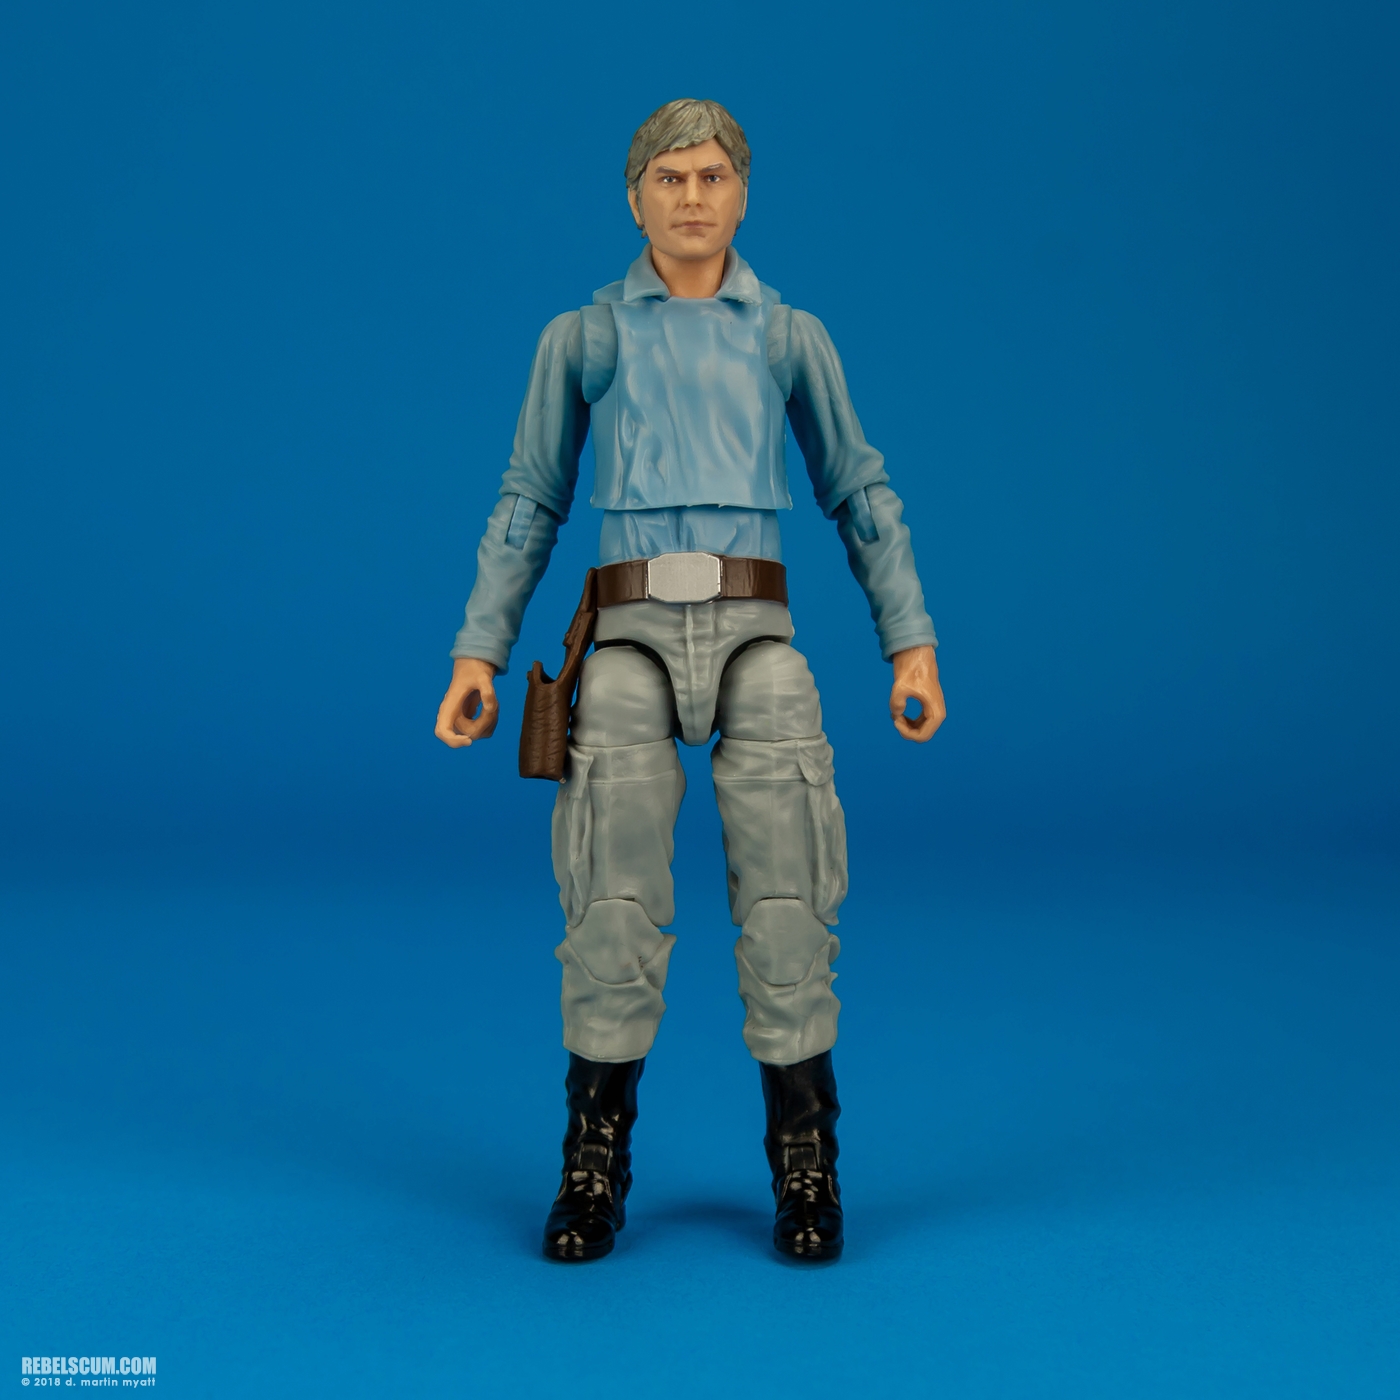 Rebel_Trooper-69-Star-Wars-The-Black-Series-6-inch-Hasbro-005.jpg